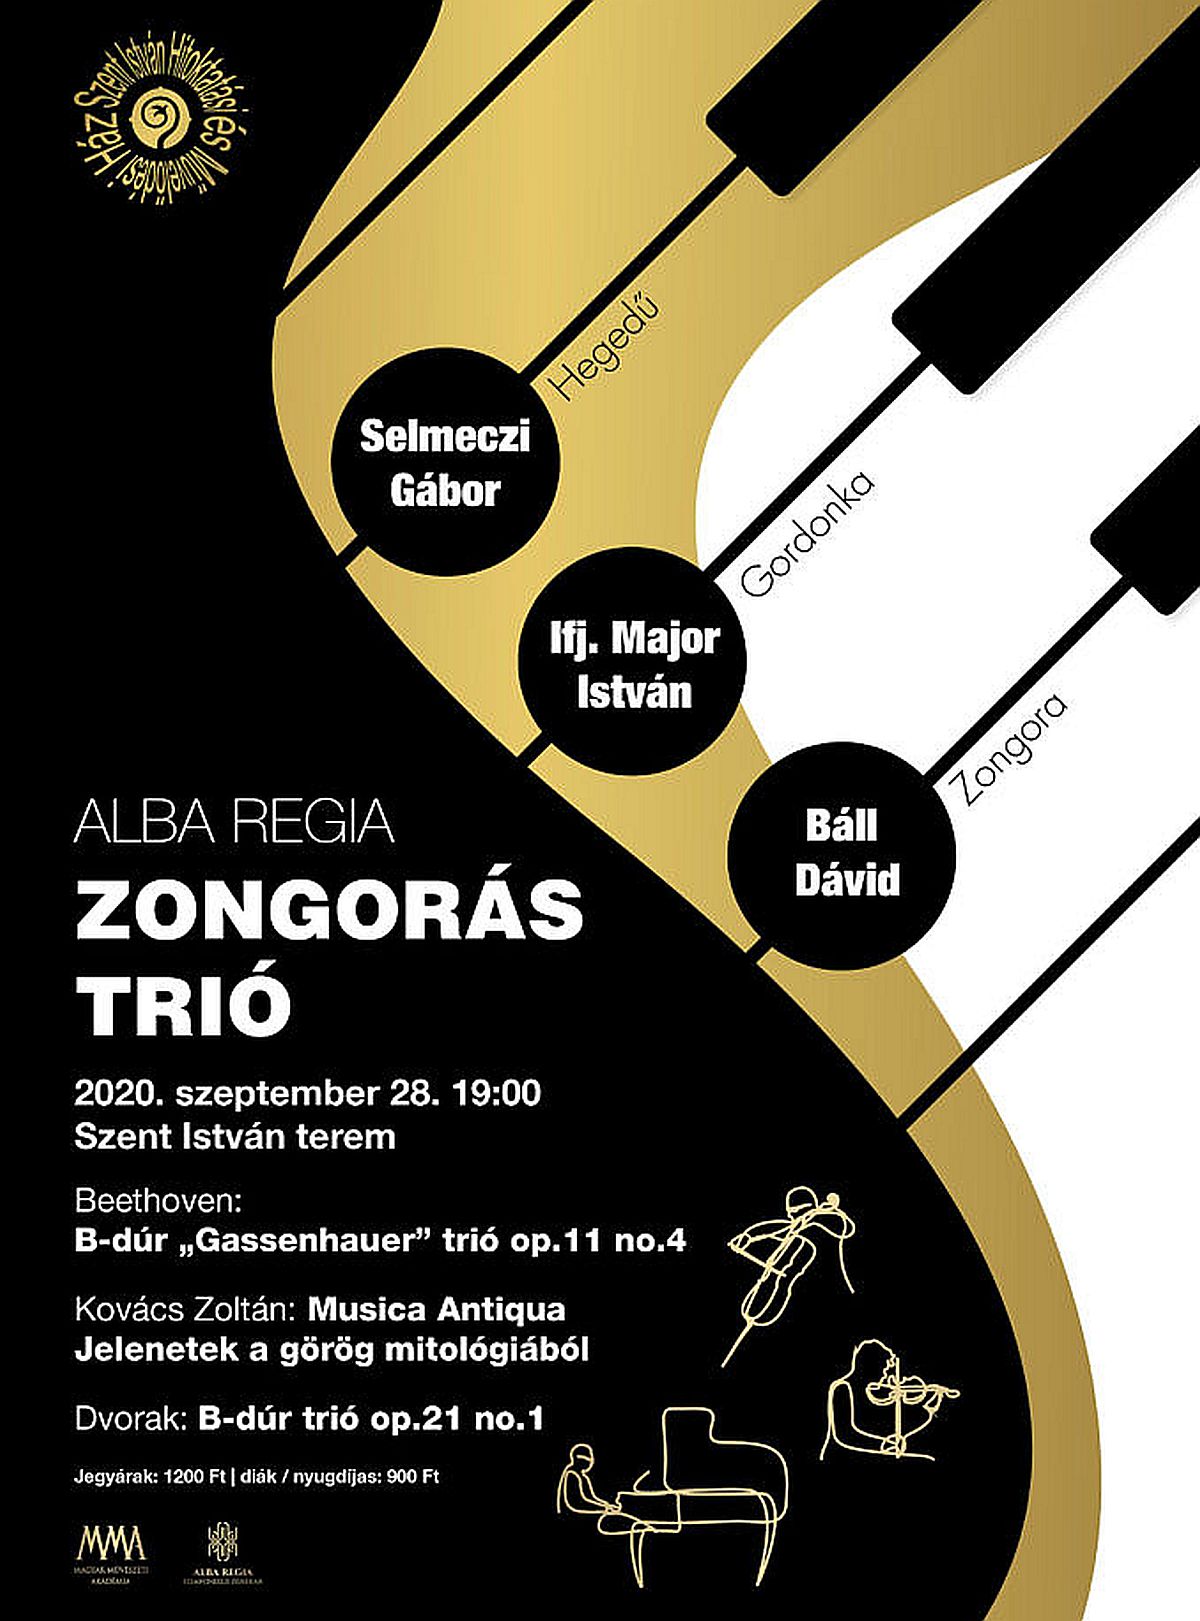 Az Alba Regia Zongorás Trió koncertje a Szent István teremben